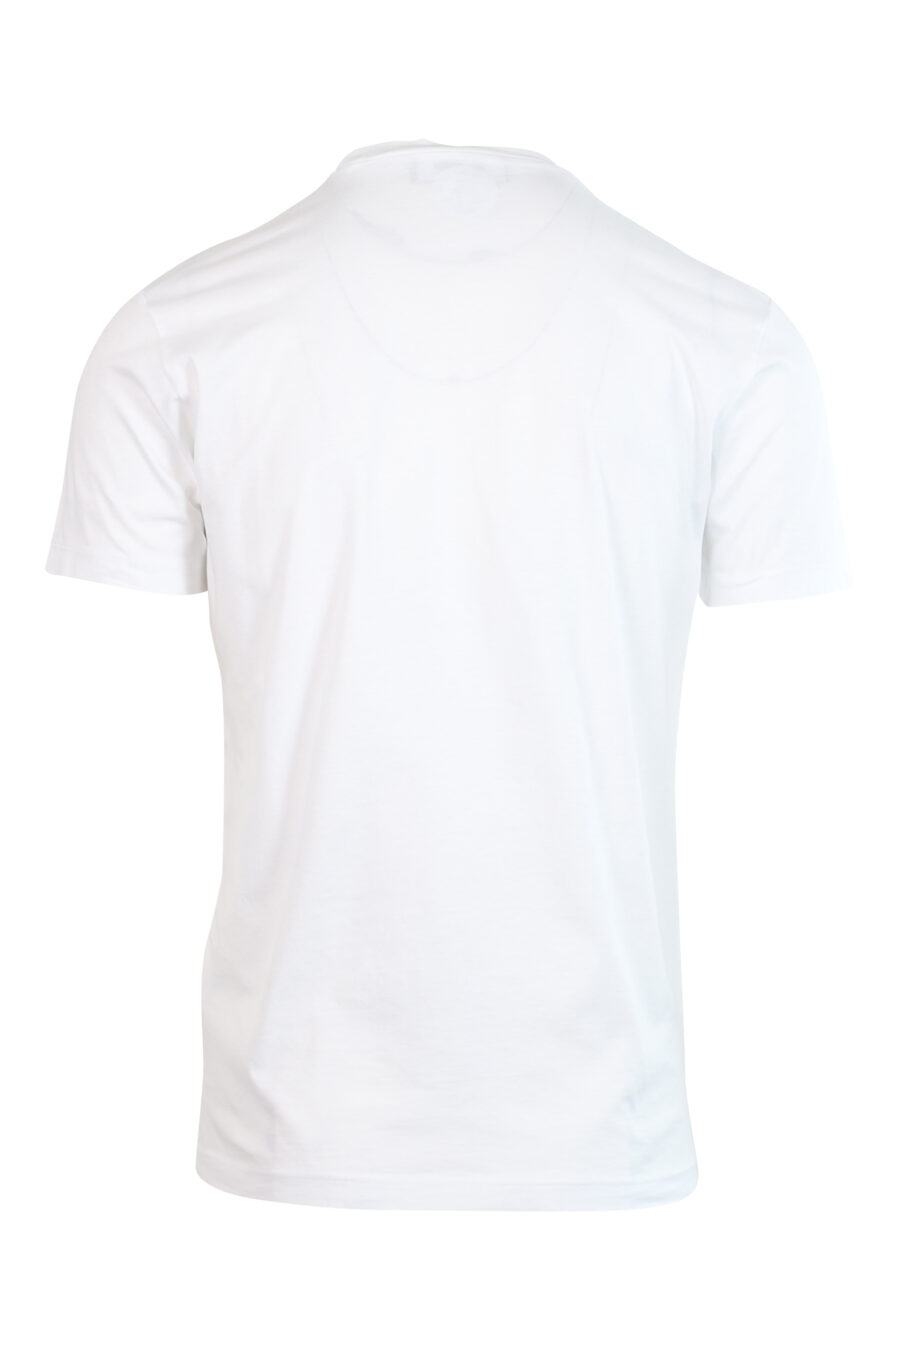 Dsquared2 - Camiseta blanca con maxilogo 